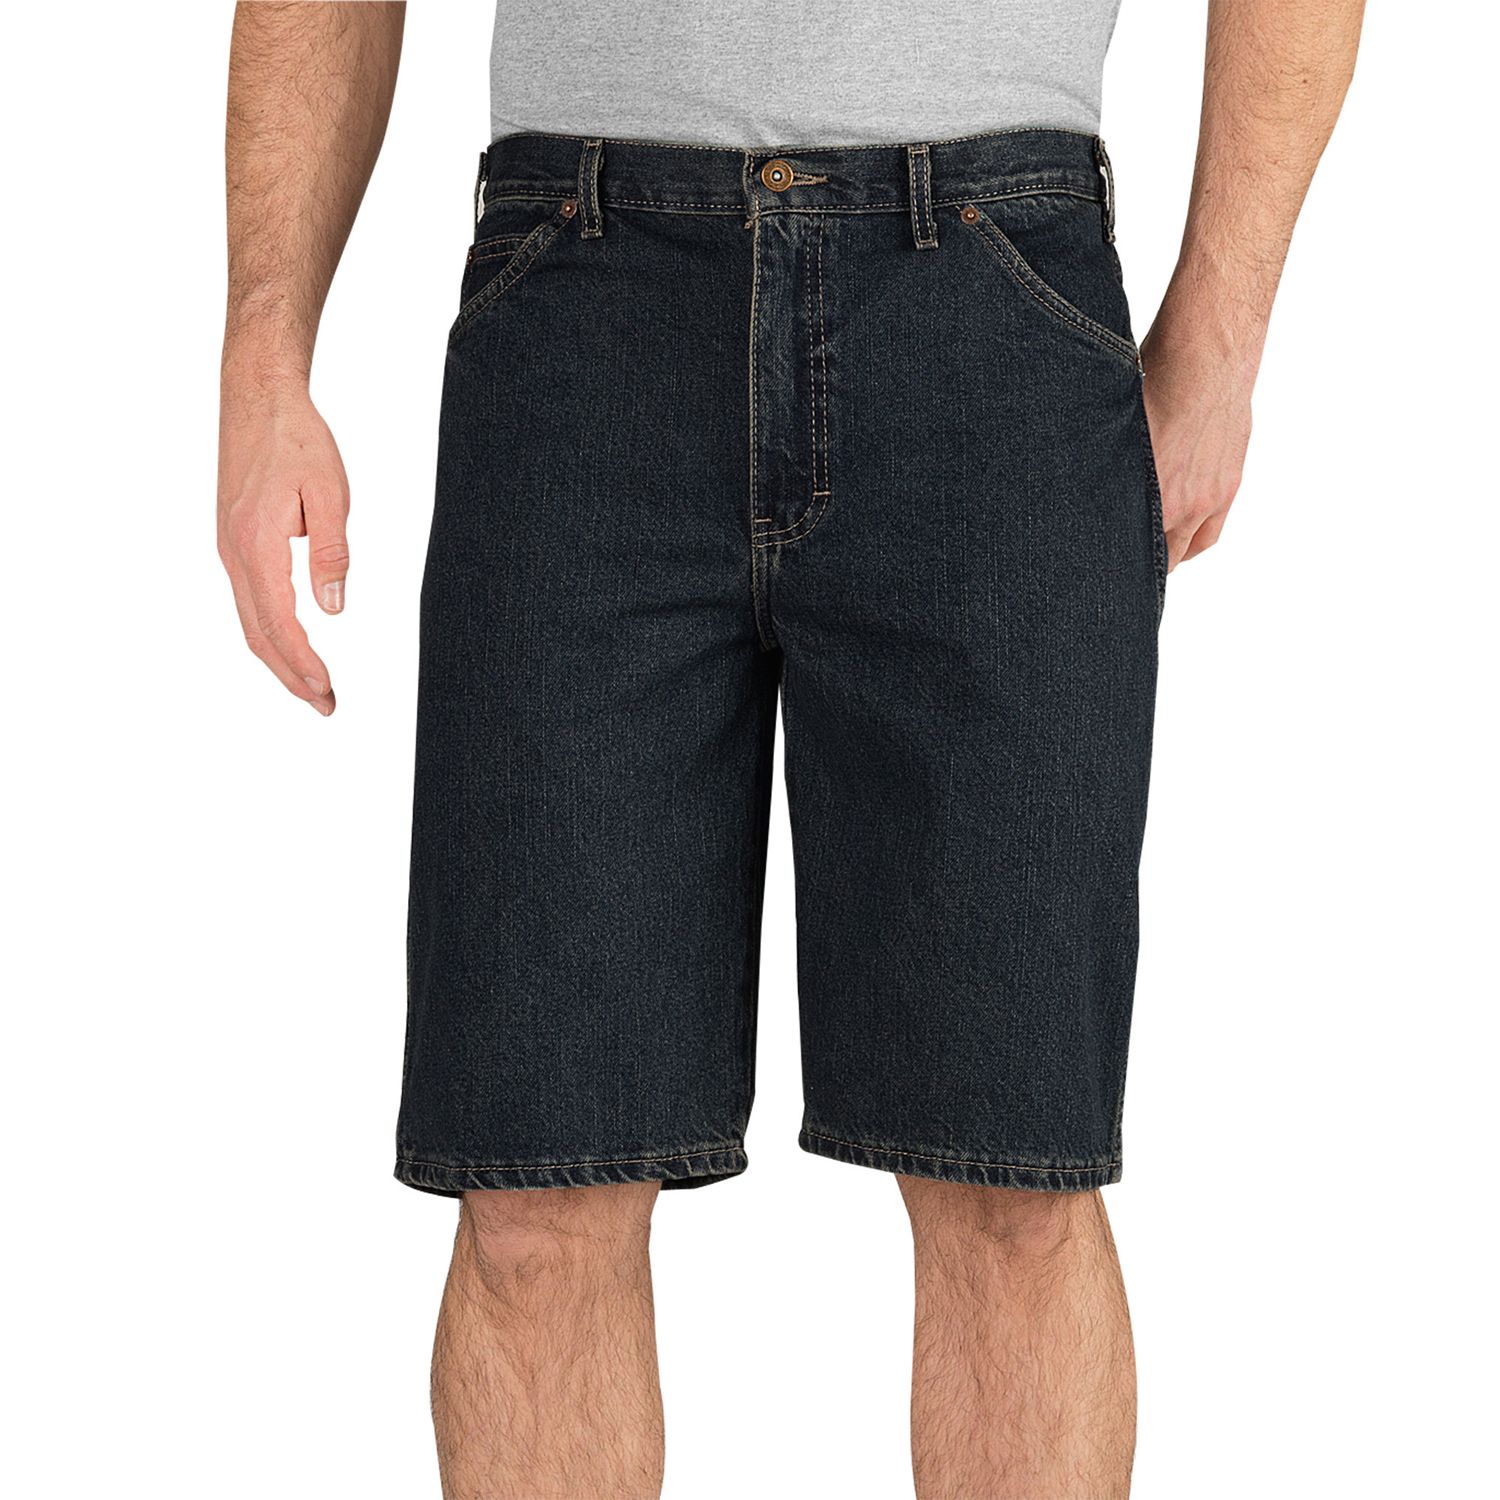 denim khaki shorts